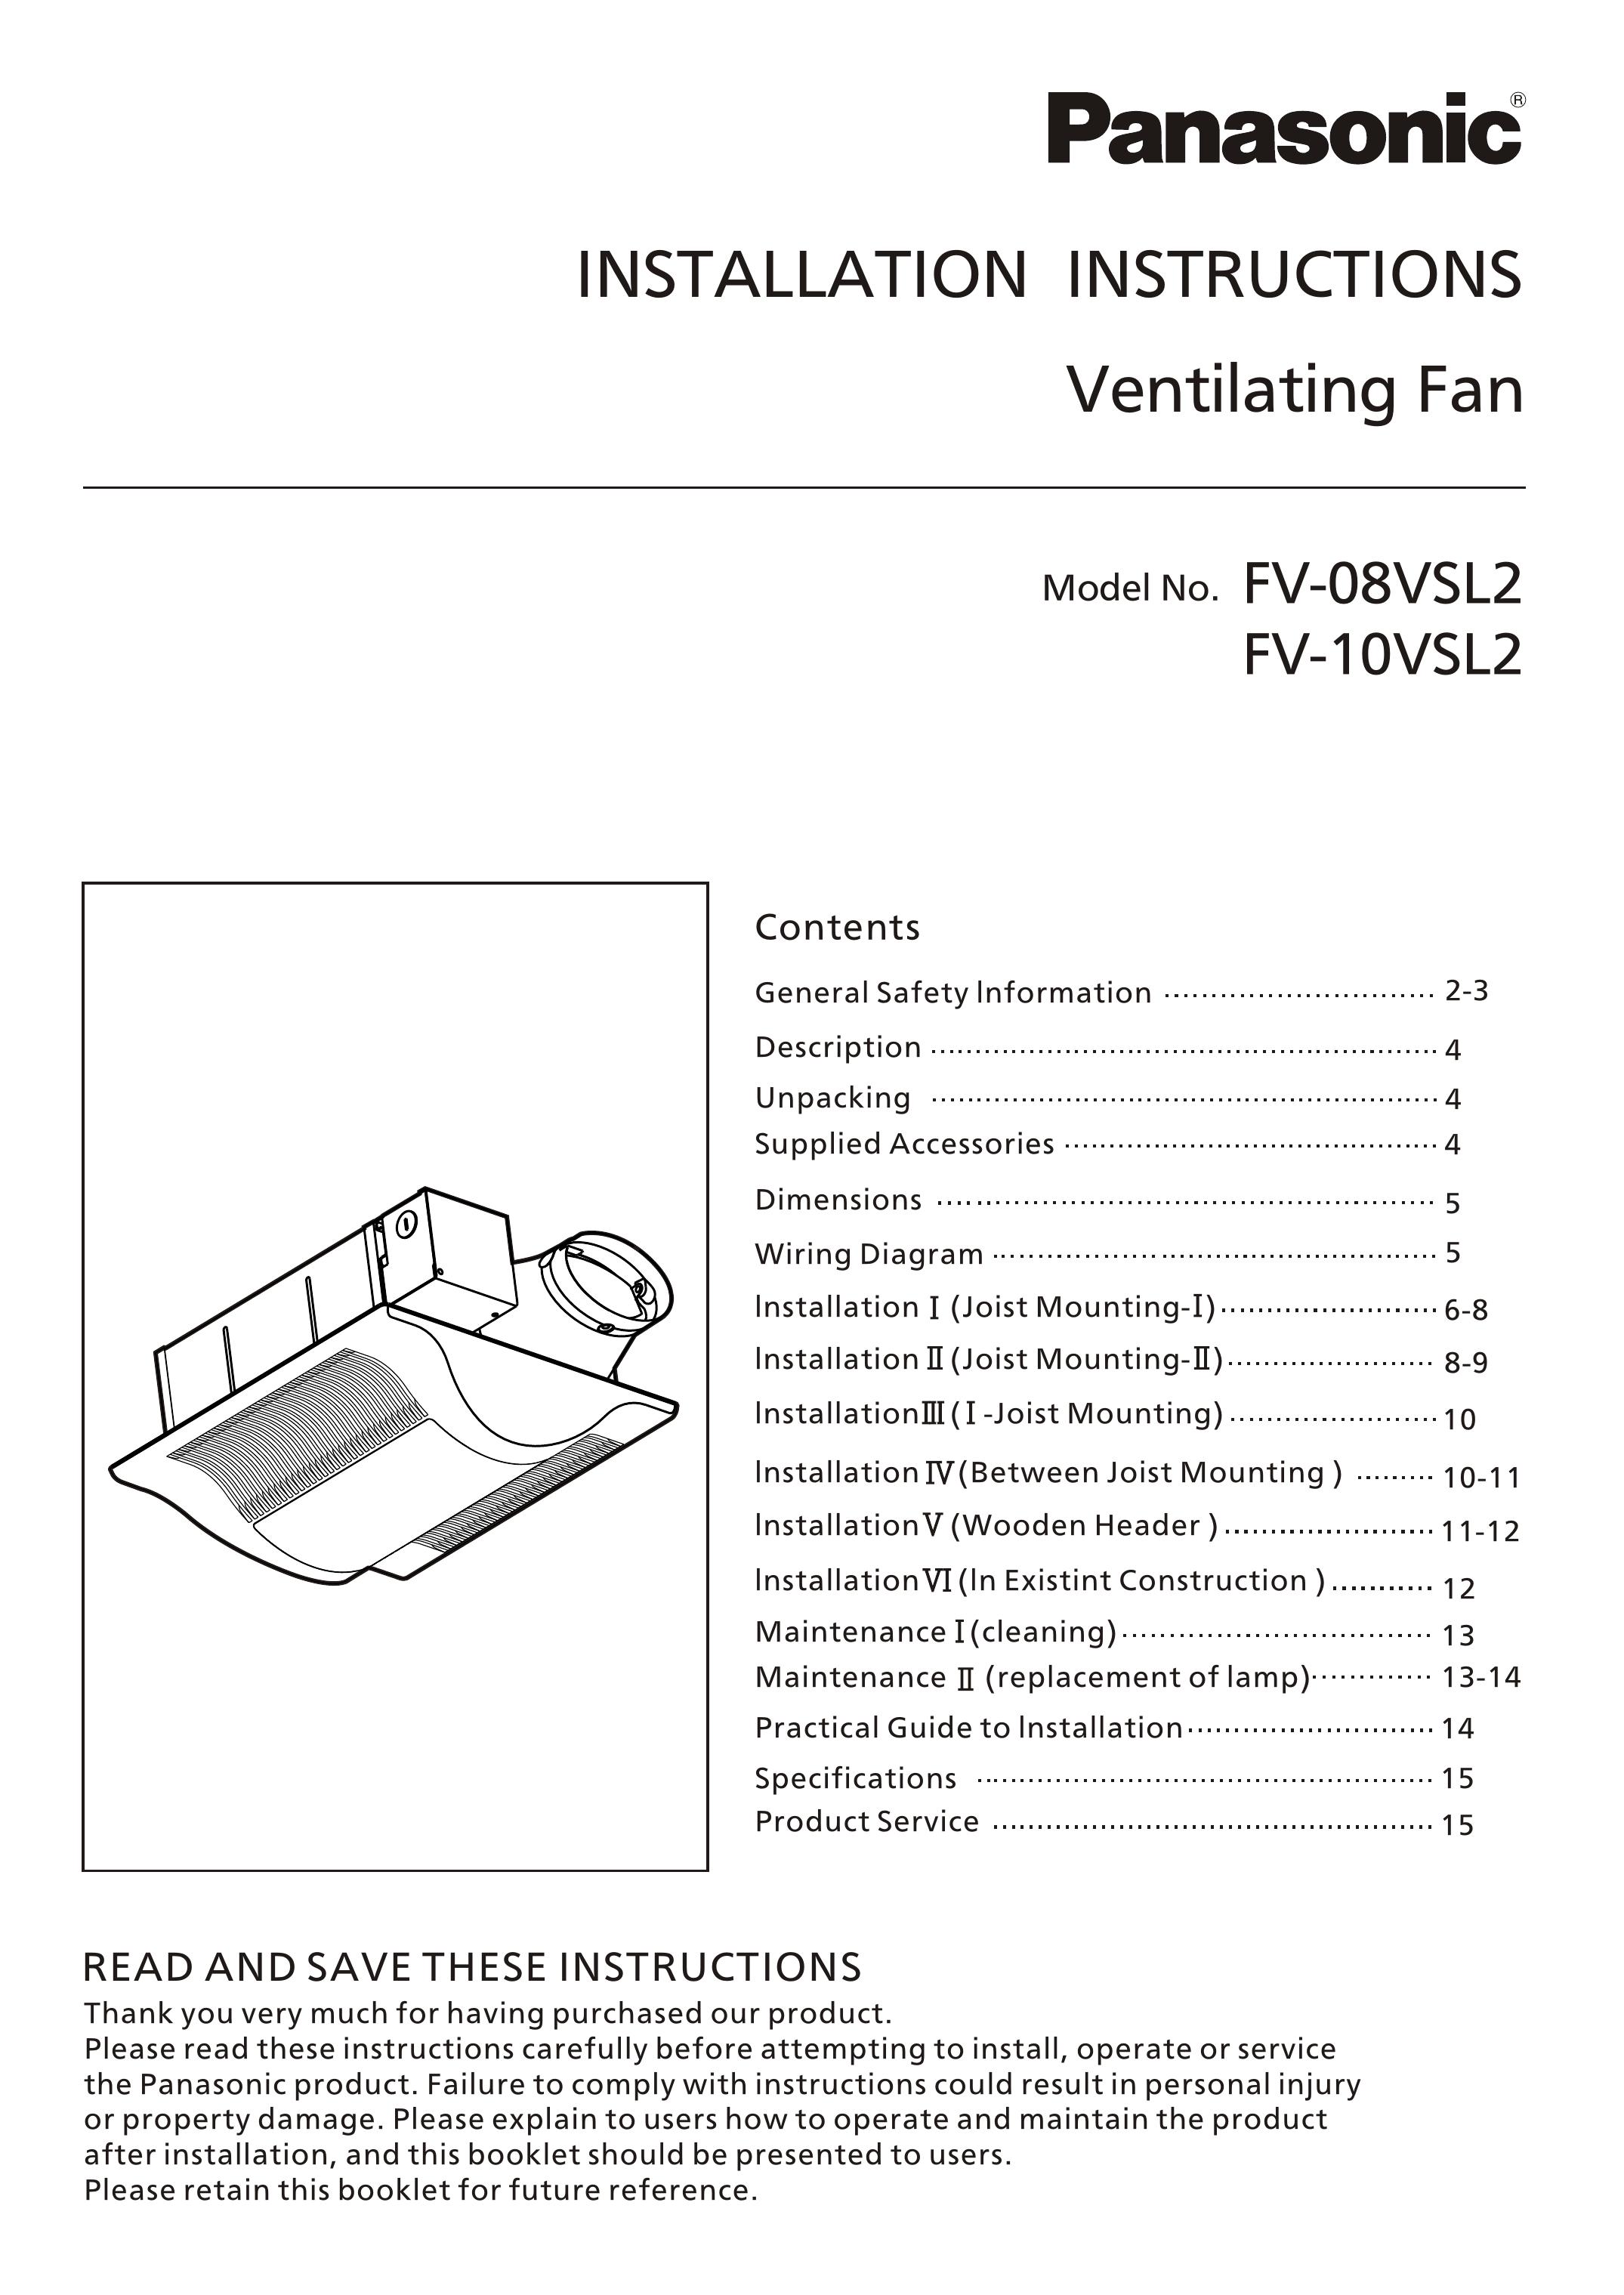 Panasonic FV-08vsl2 Ventilation Hood User Manual